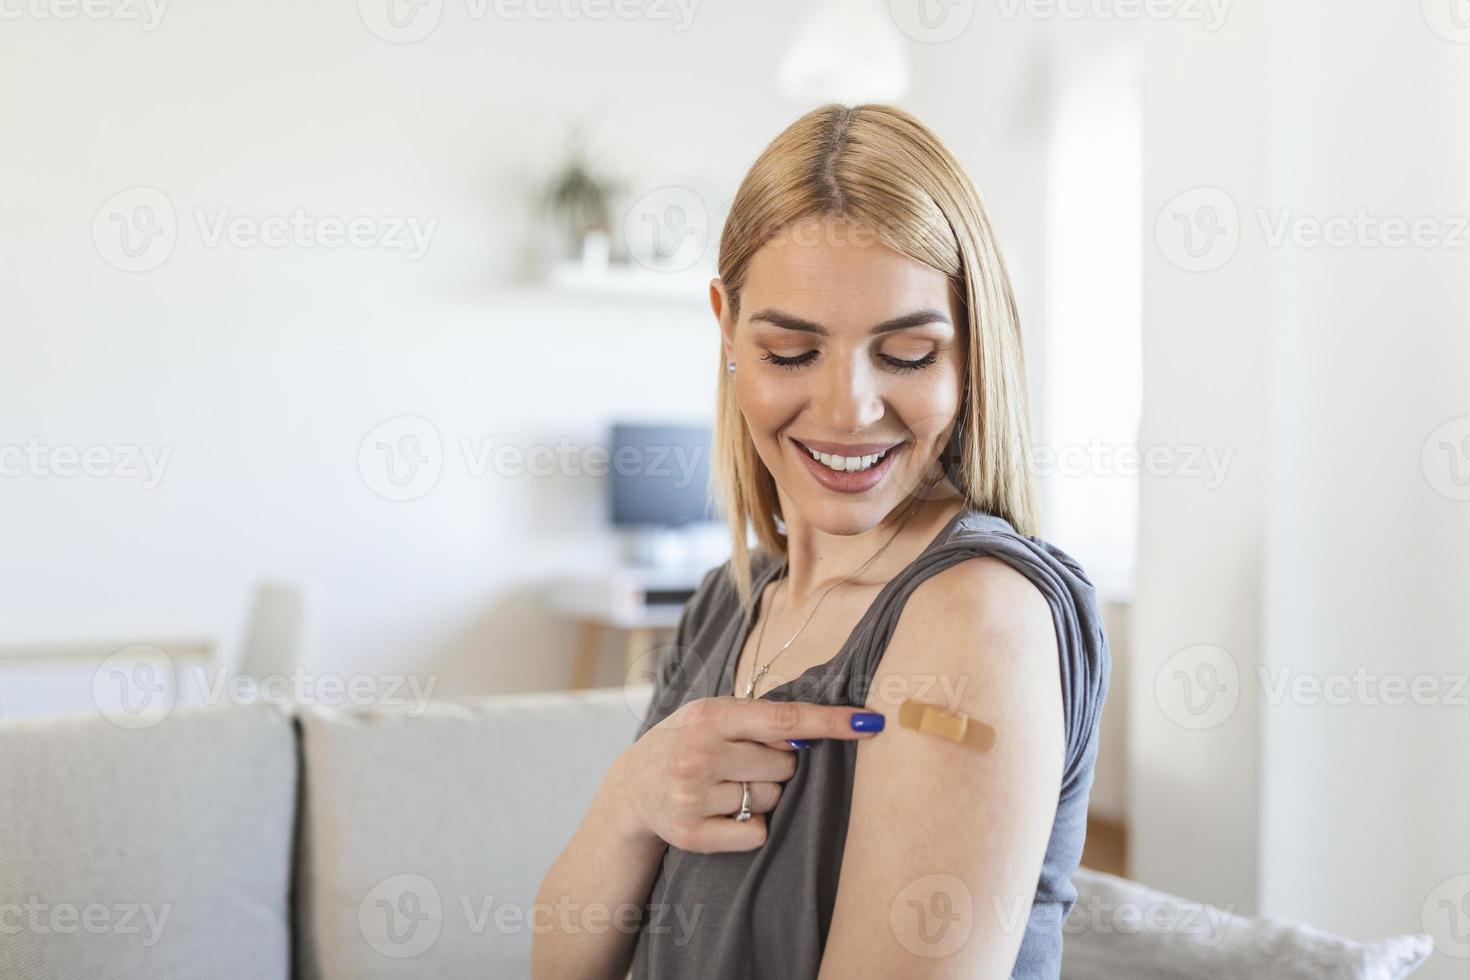 frau, die mit einem verband auf seinen arm zeigt, nachdem sie den covid-19-impfstoff erhalten hat. junge frau, die ihre schulter zeigt, nachdem sie einen coronavirus-impfstoff erhalten hat foto